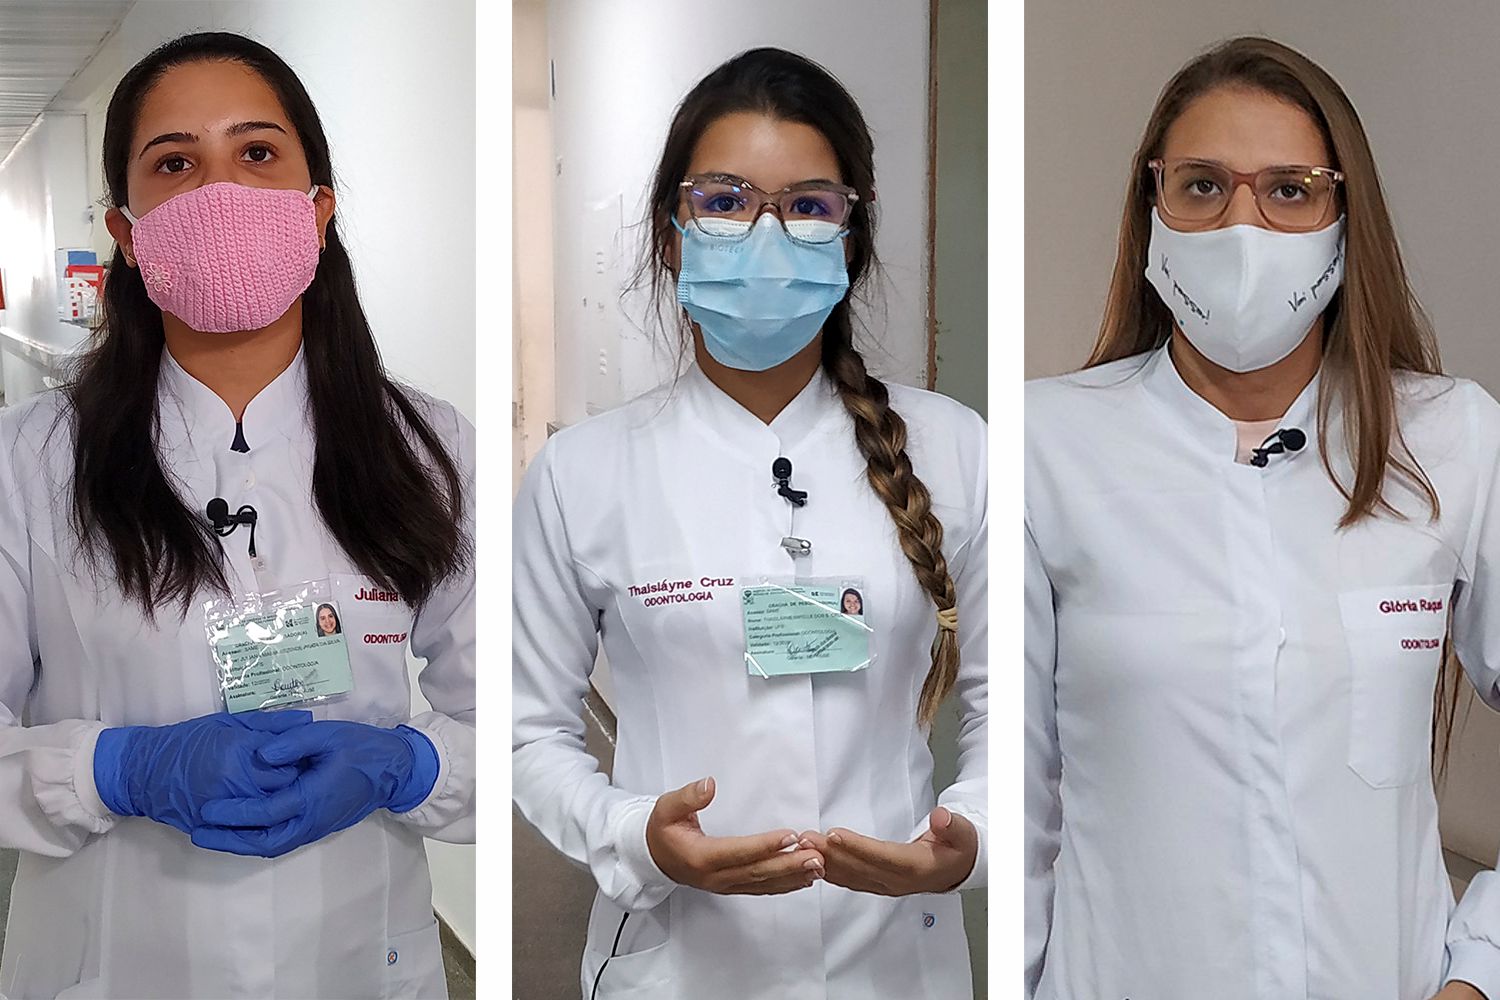 Alunas de Odontologia do campus de Lagarto, Juliana Prata, Thaisláyne Santos Cruz e Glória Raquel São Mateus analisam os prontuários no HUSE.